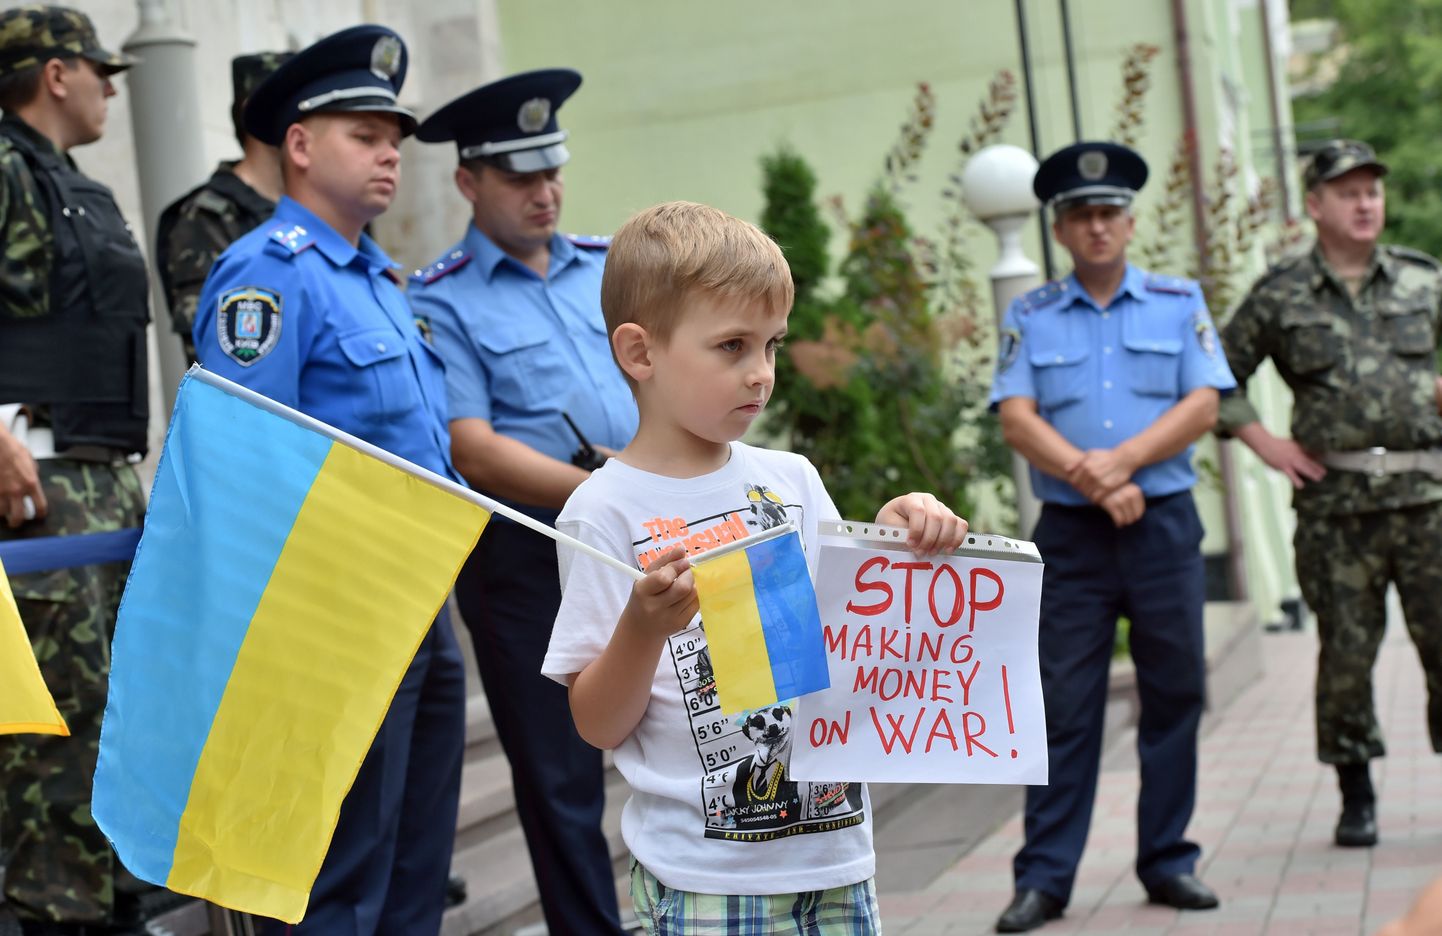 Mistrali-tehingu vastane meeleavaldus Prantsuse saatkonna ees Kiievis.